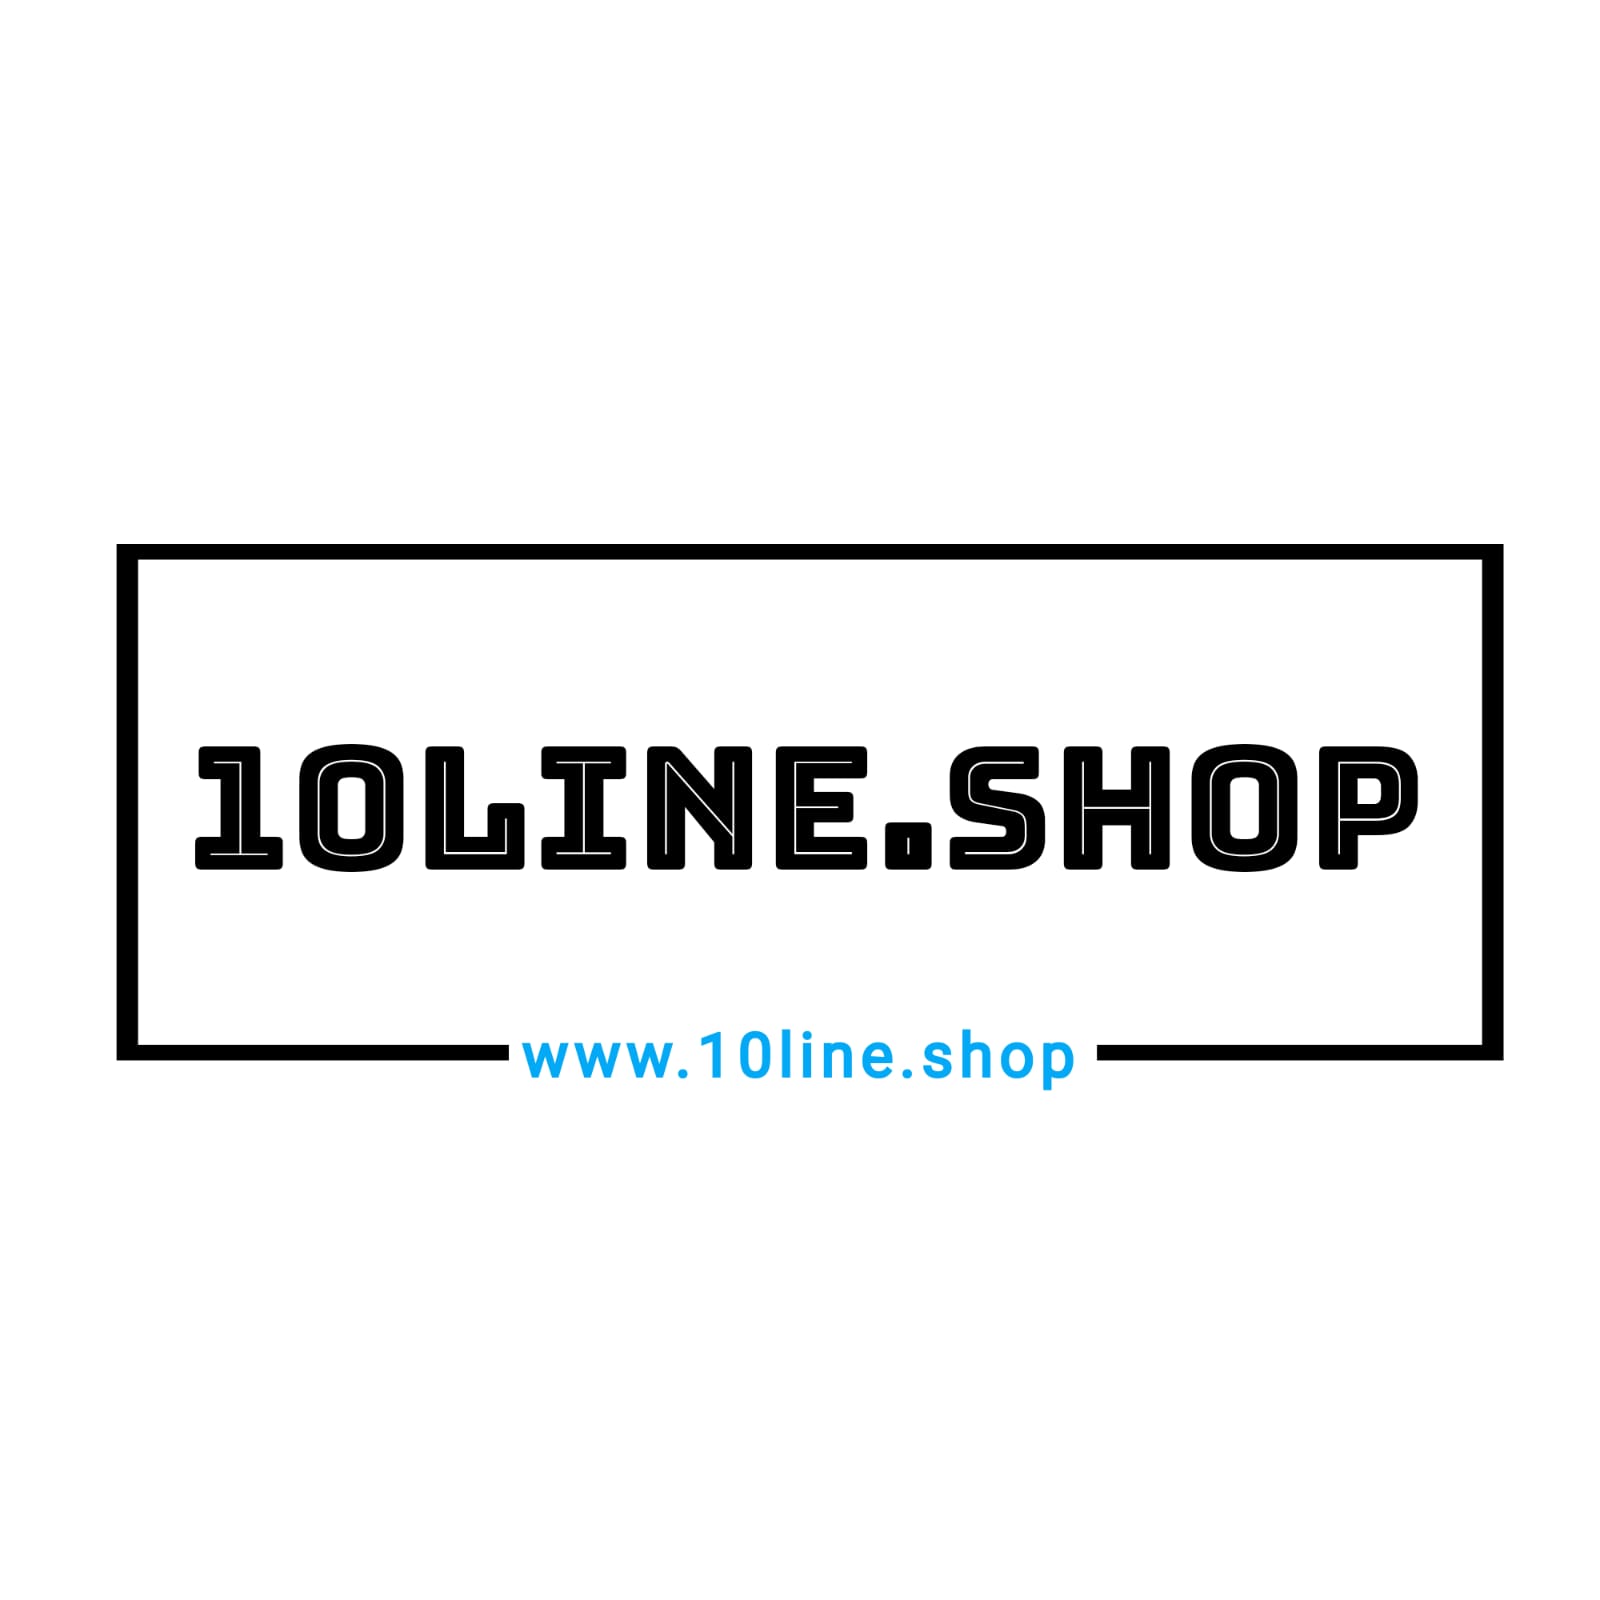 10line.shop